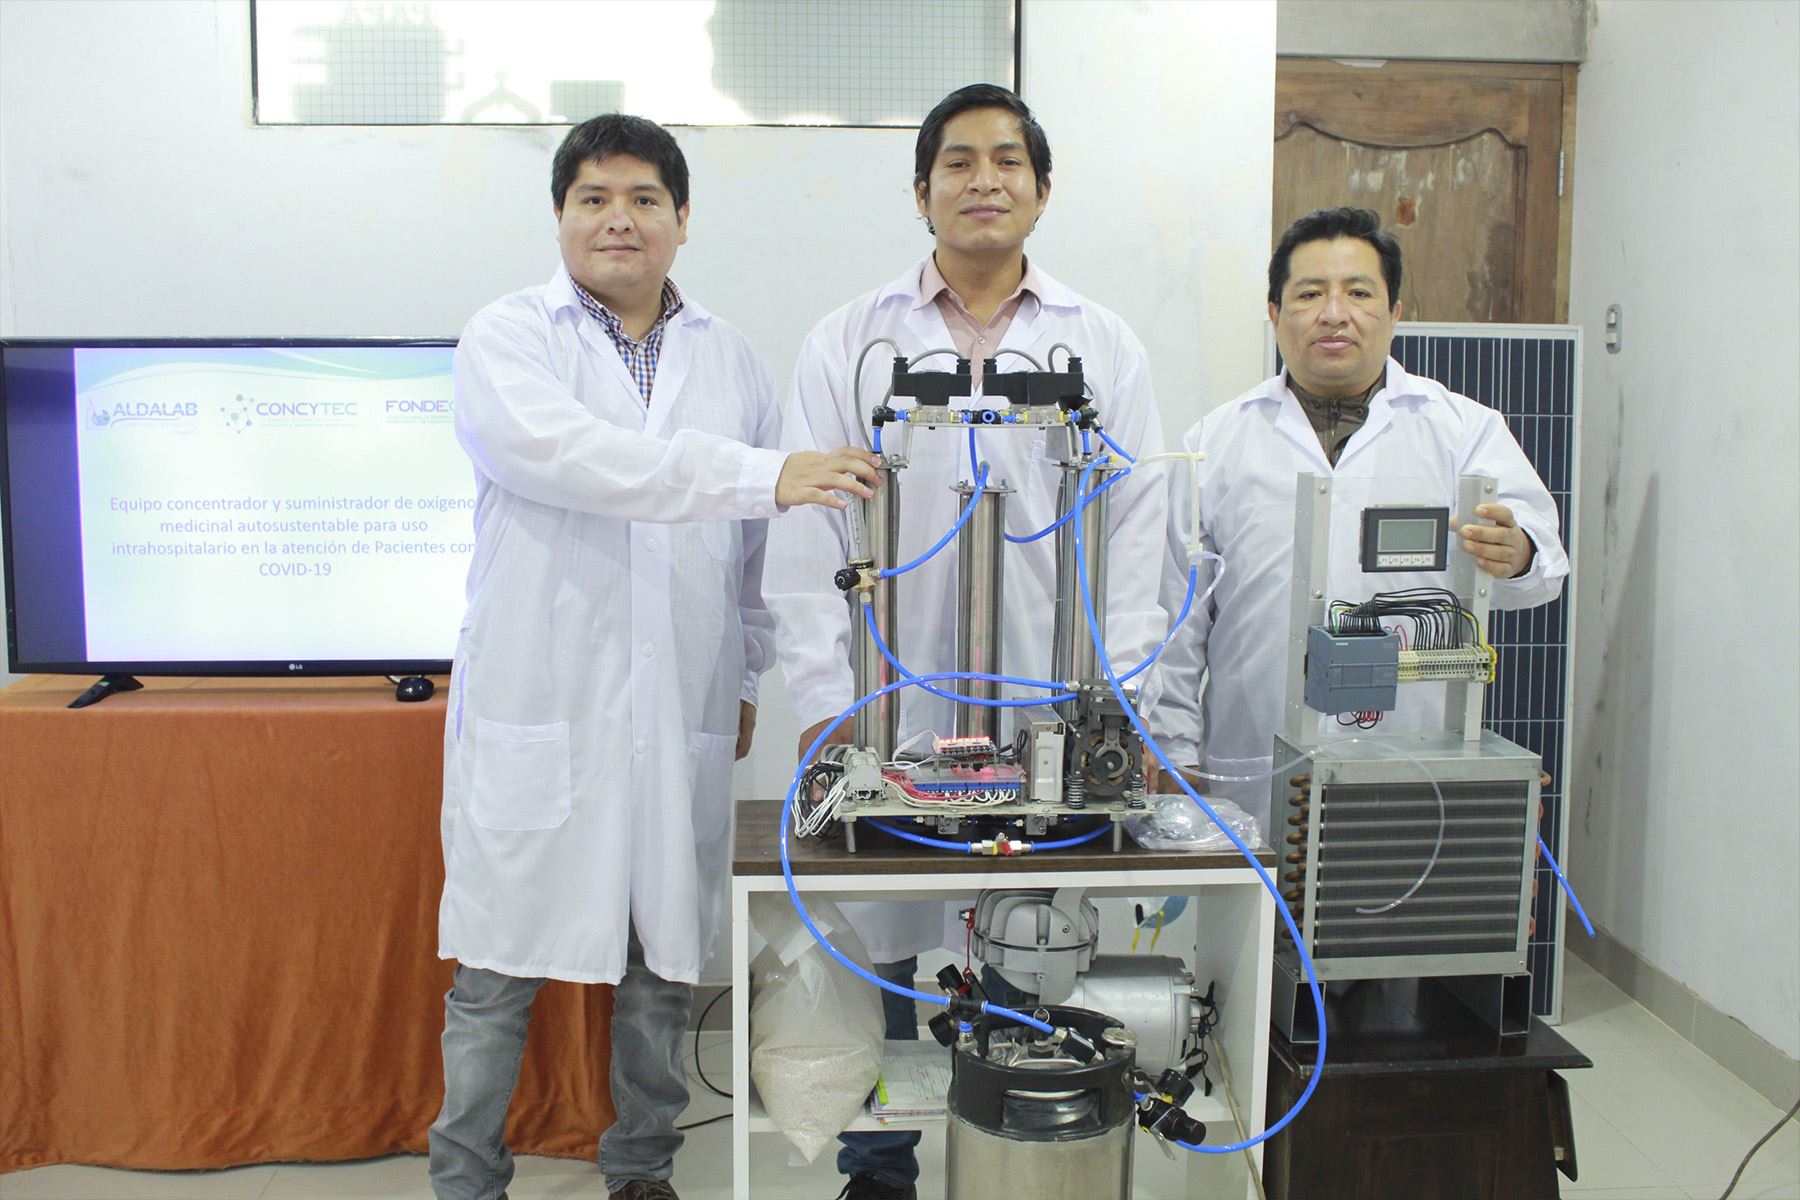 Investigadores peruanos están desarrollando un equipo concentrador y suministrador de oxígeno medicinal autosustentable.